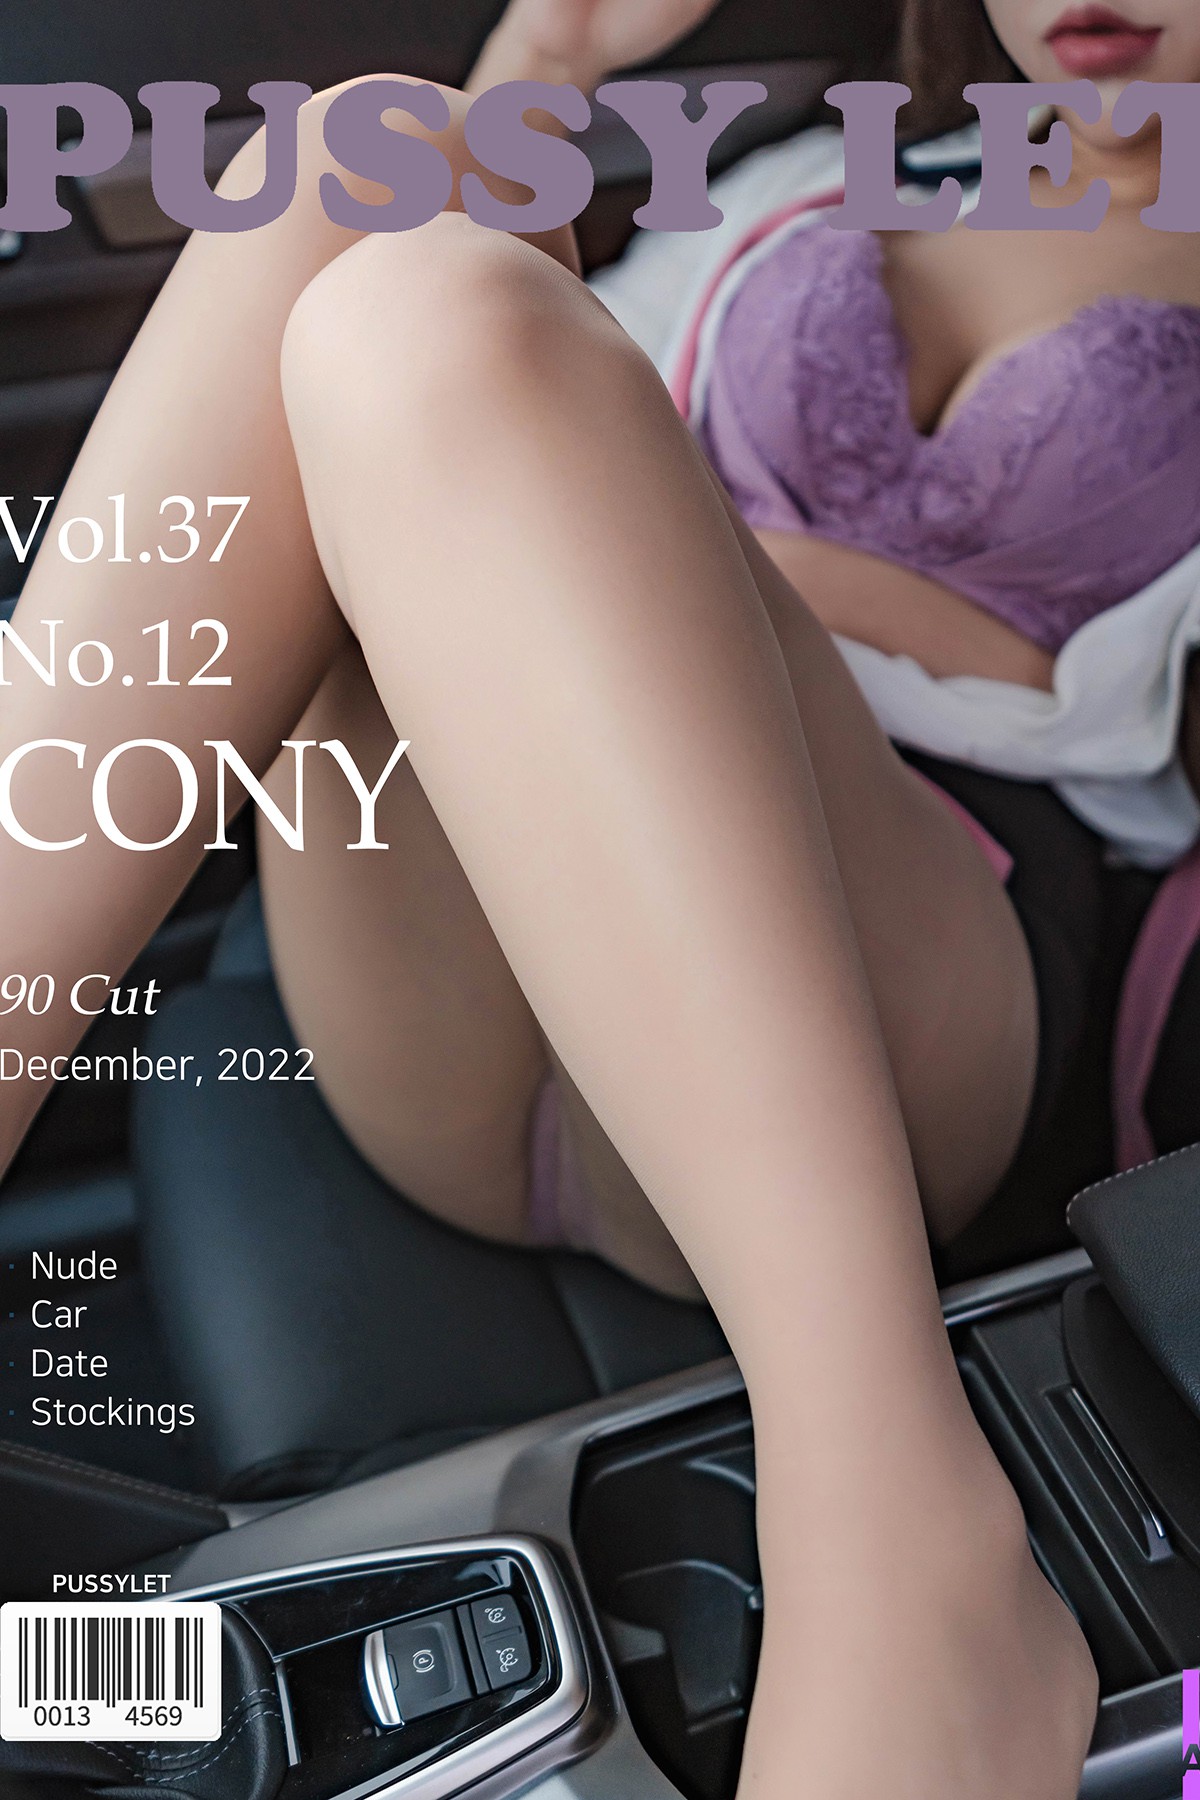 PUSSYLET Vol.37 Cony 코니 No.12